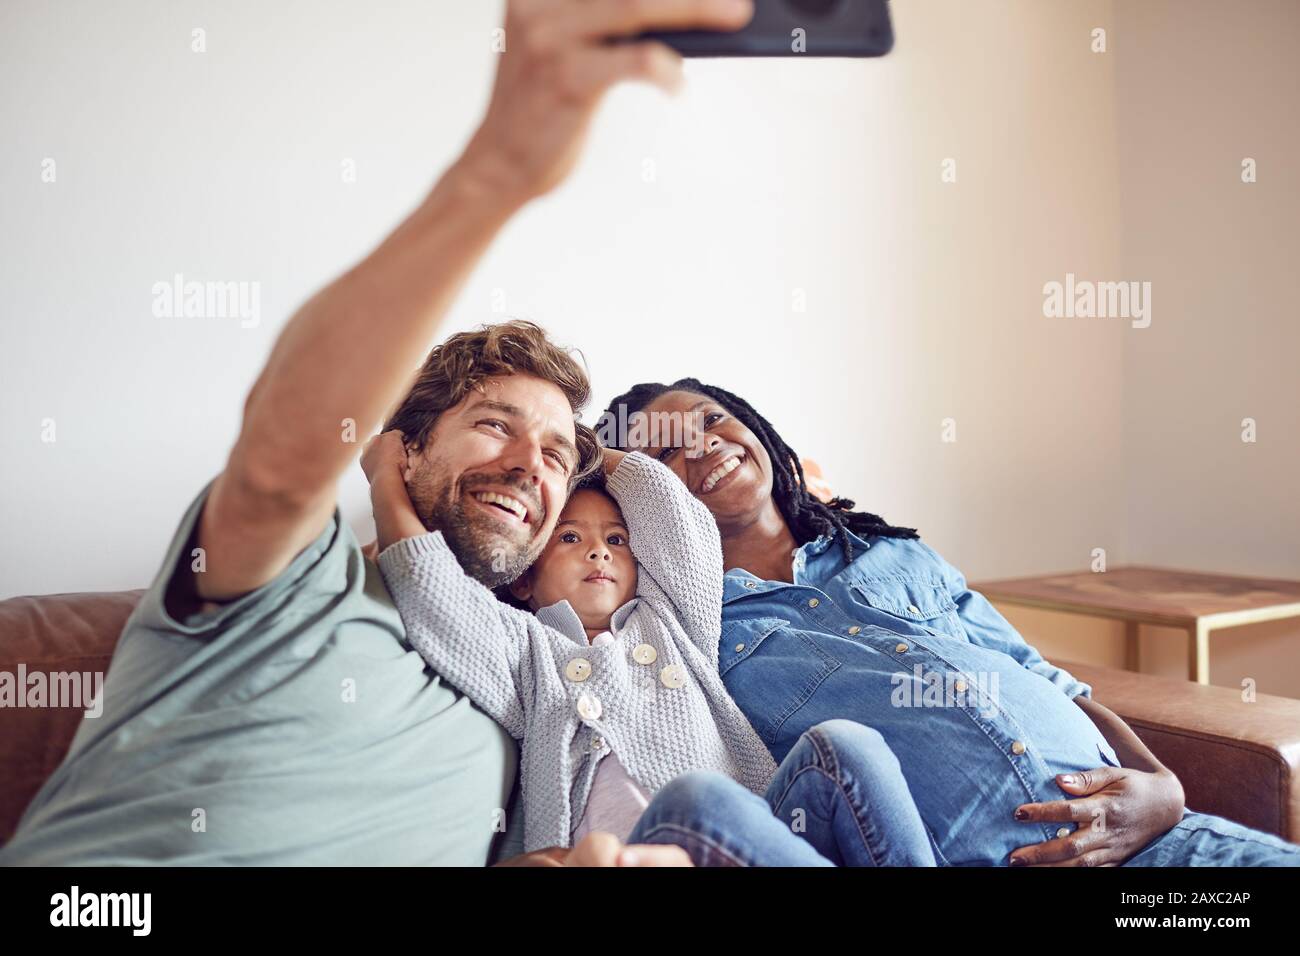 Glückliche schwangere junge Familie, die selfie nimmt Stockfoto